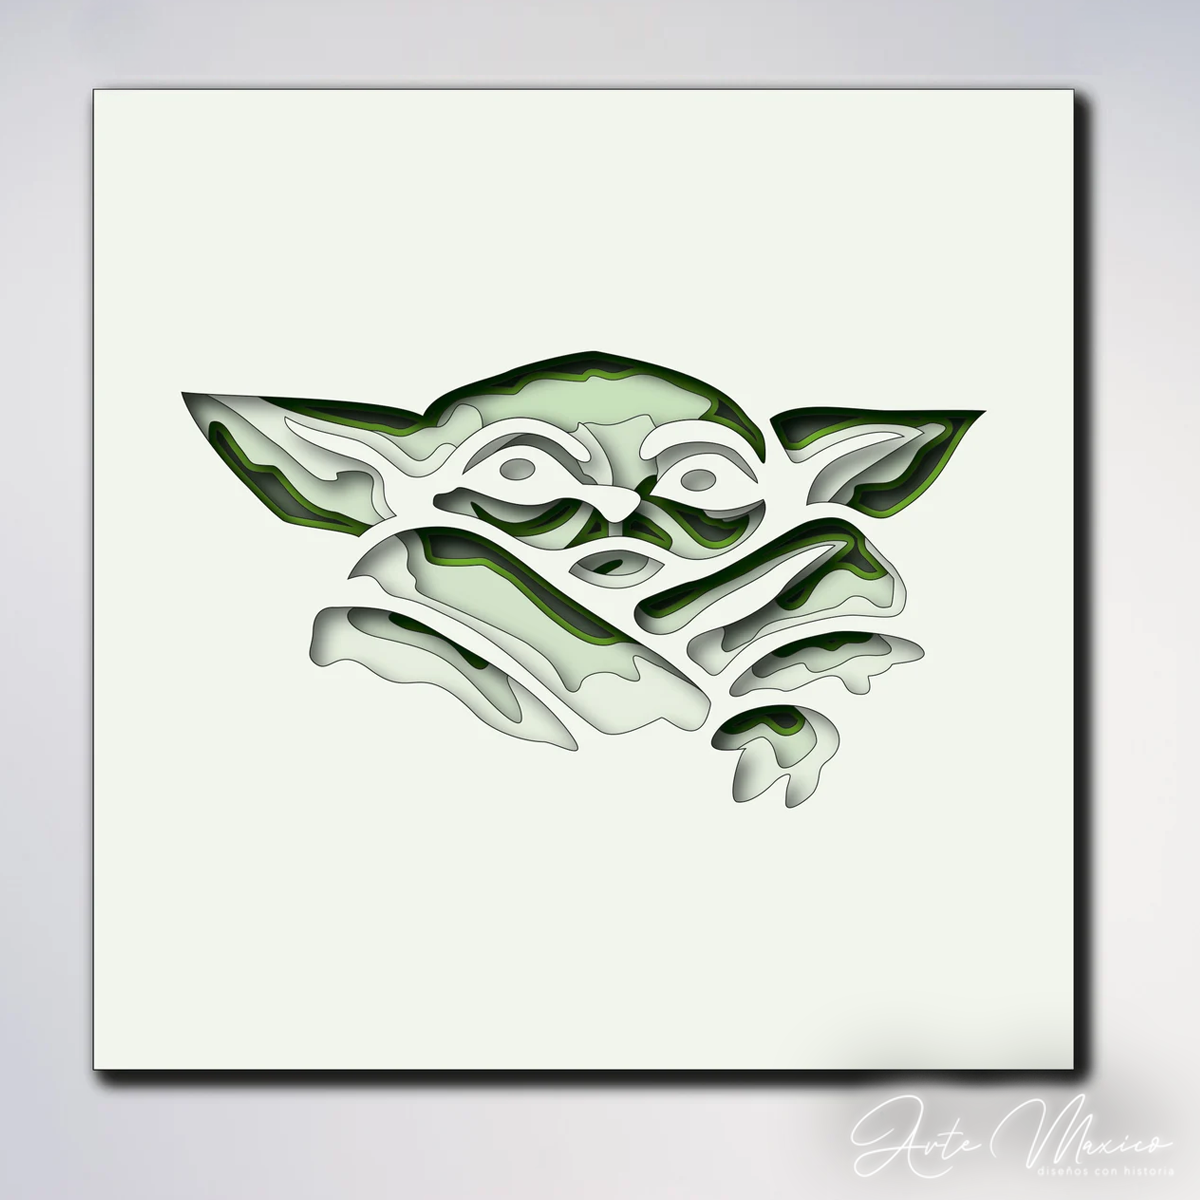 Yoda Multicapas